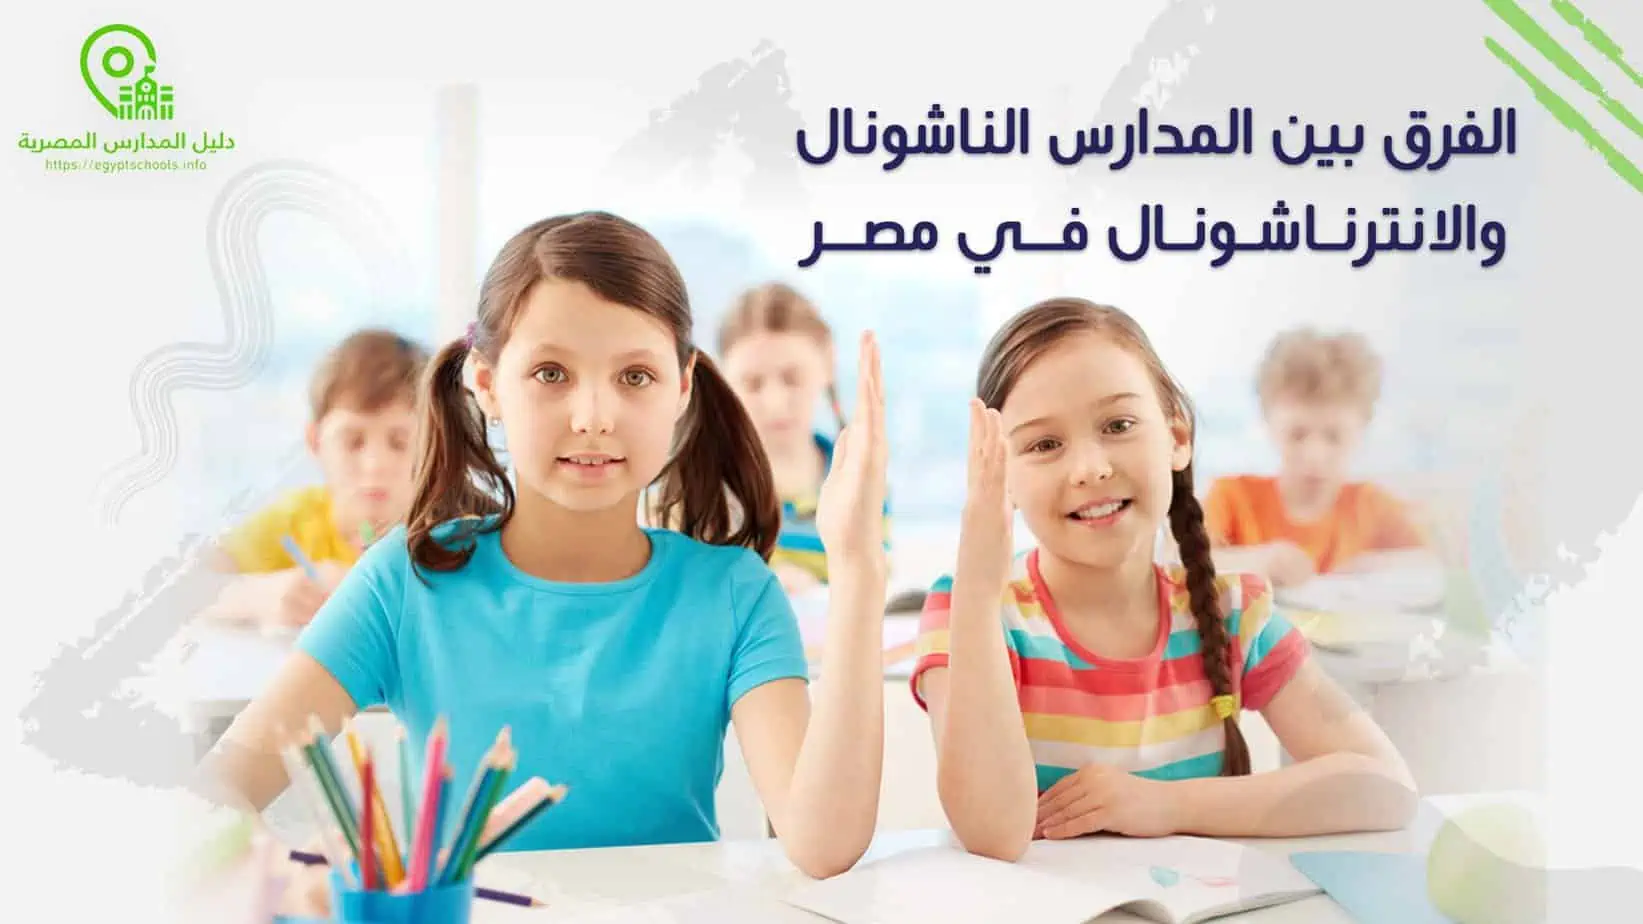 الفرق بين المدارس الناشونال والانترناشونال في مصر